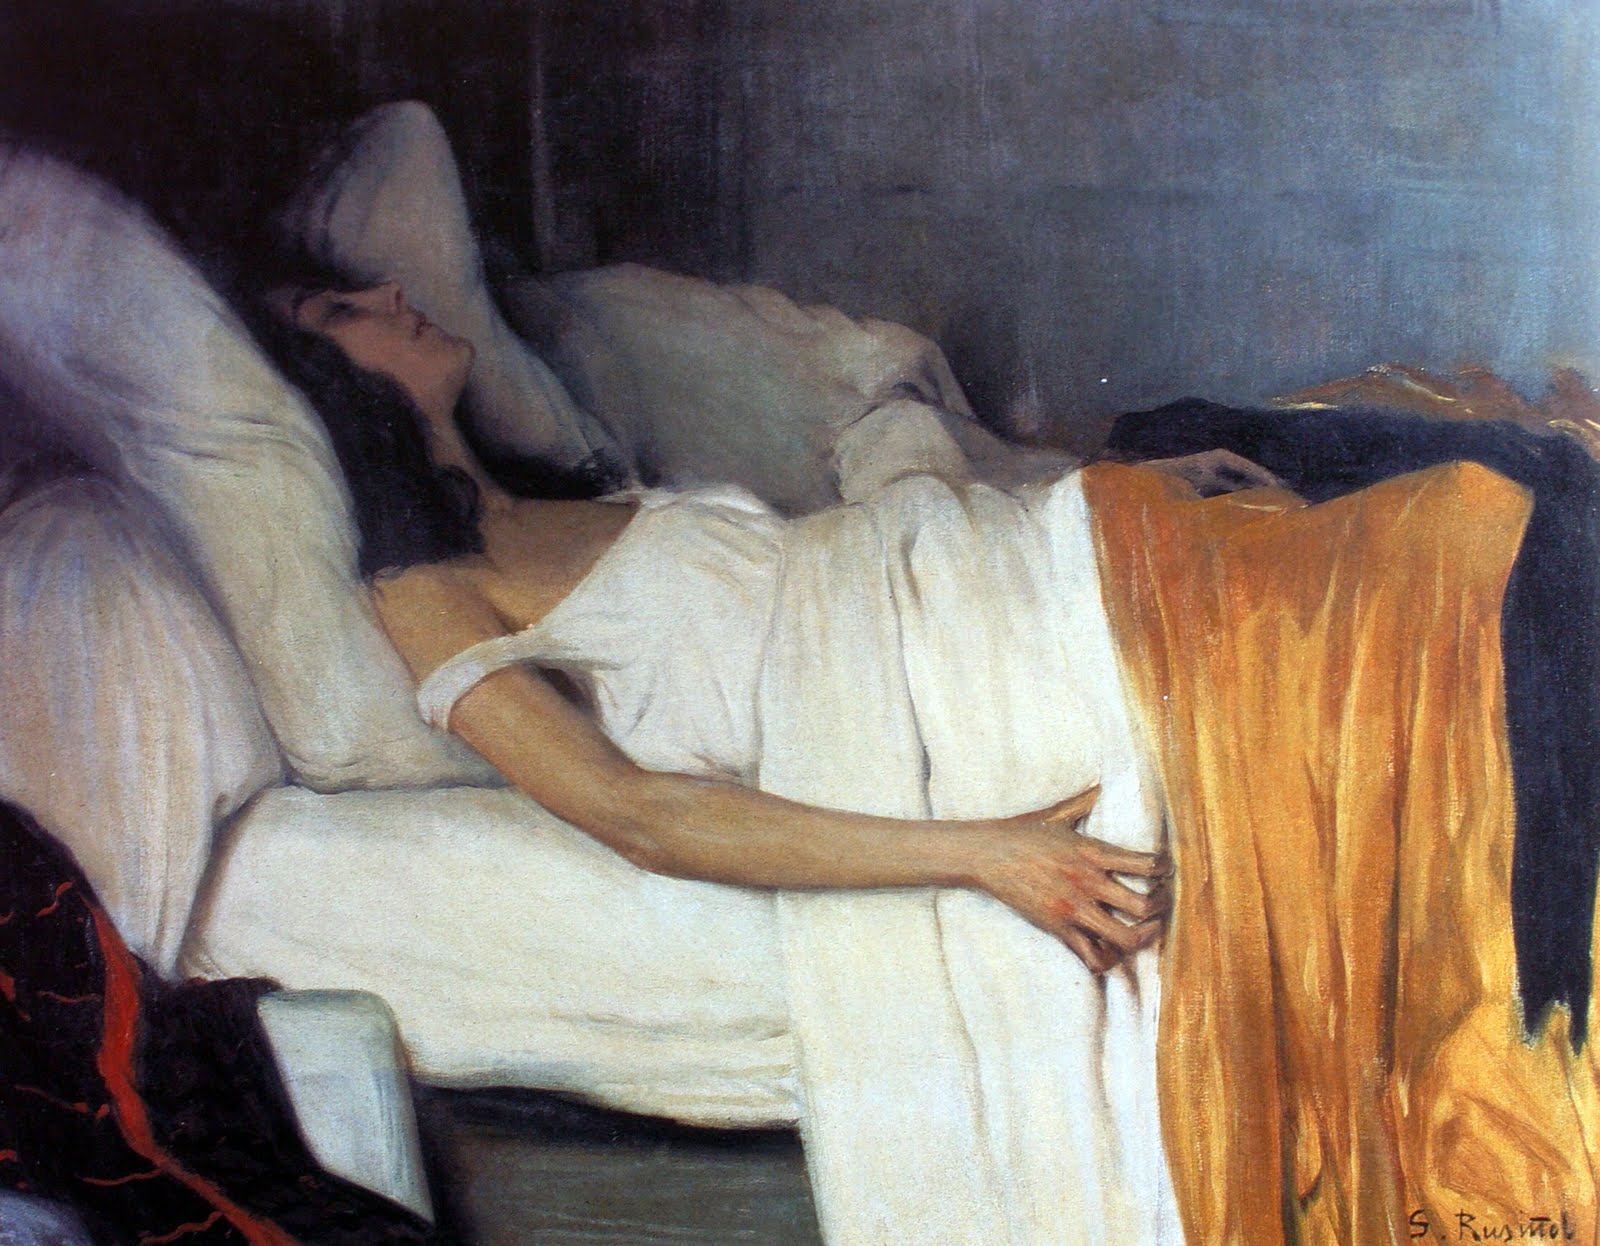 《嗎啡的女孩》 by Santiago Rusiñol - 1894 - 87.8 x 115.2 cm 